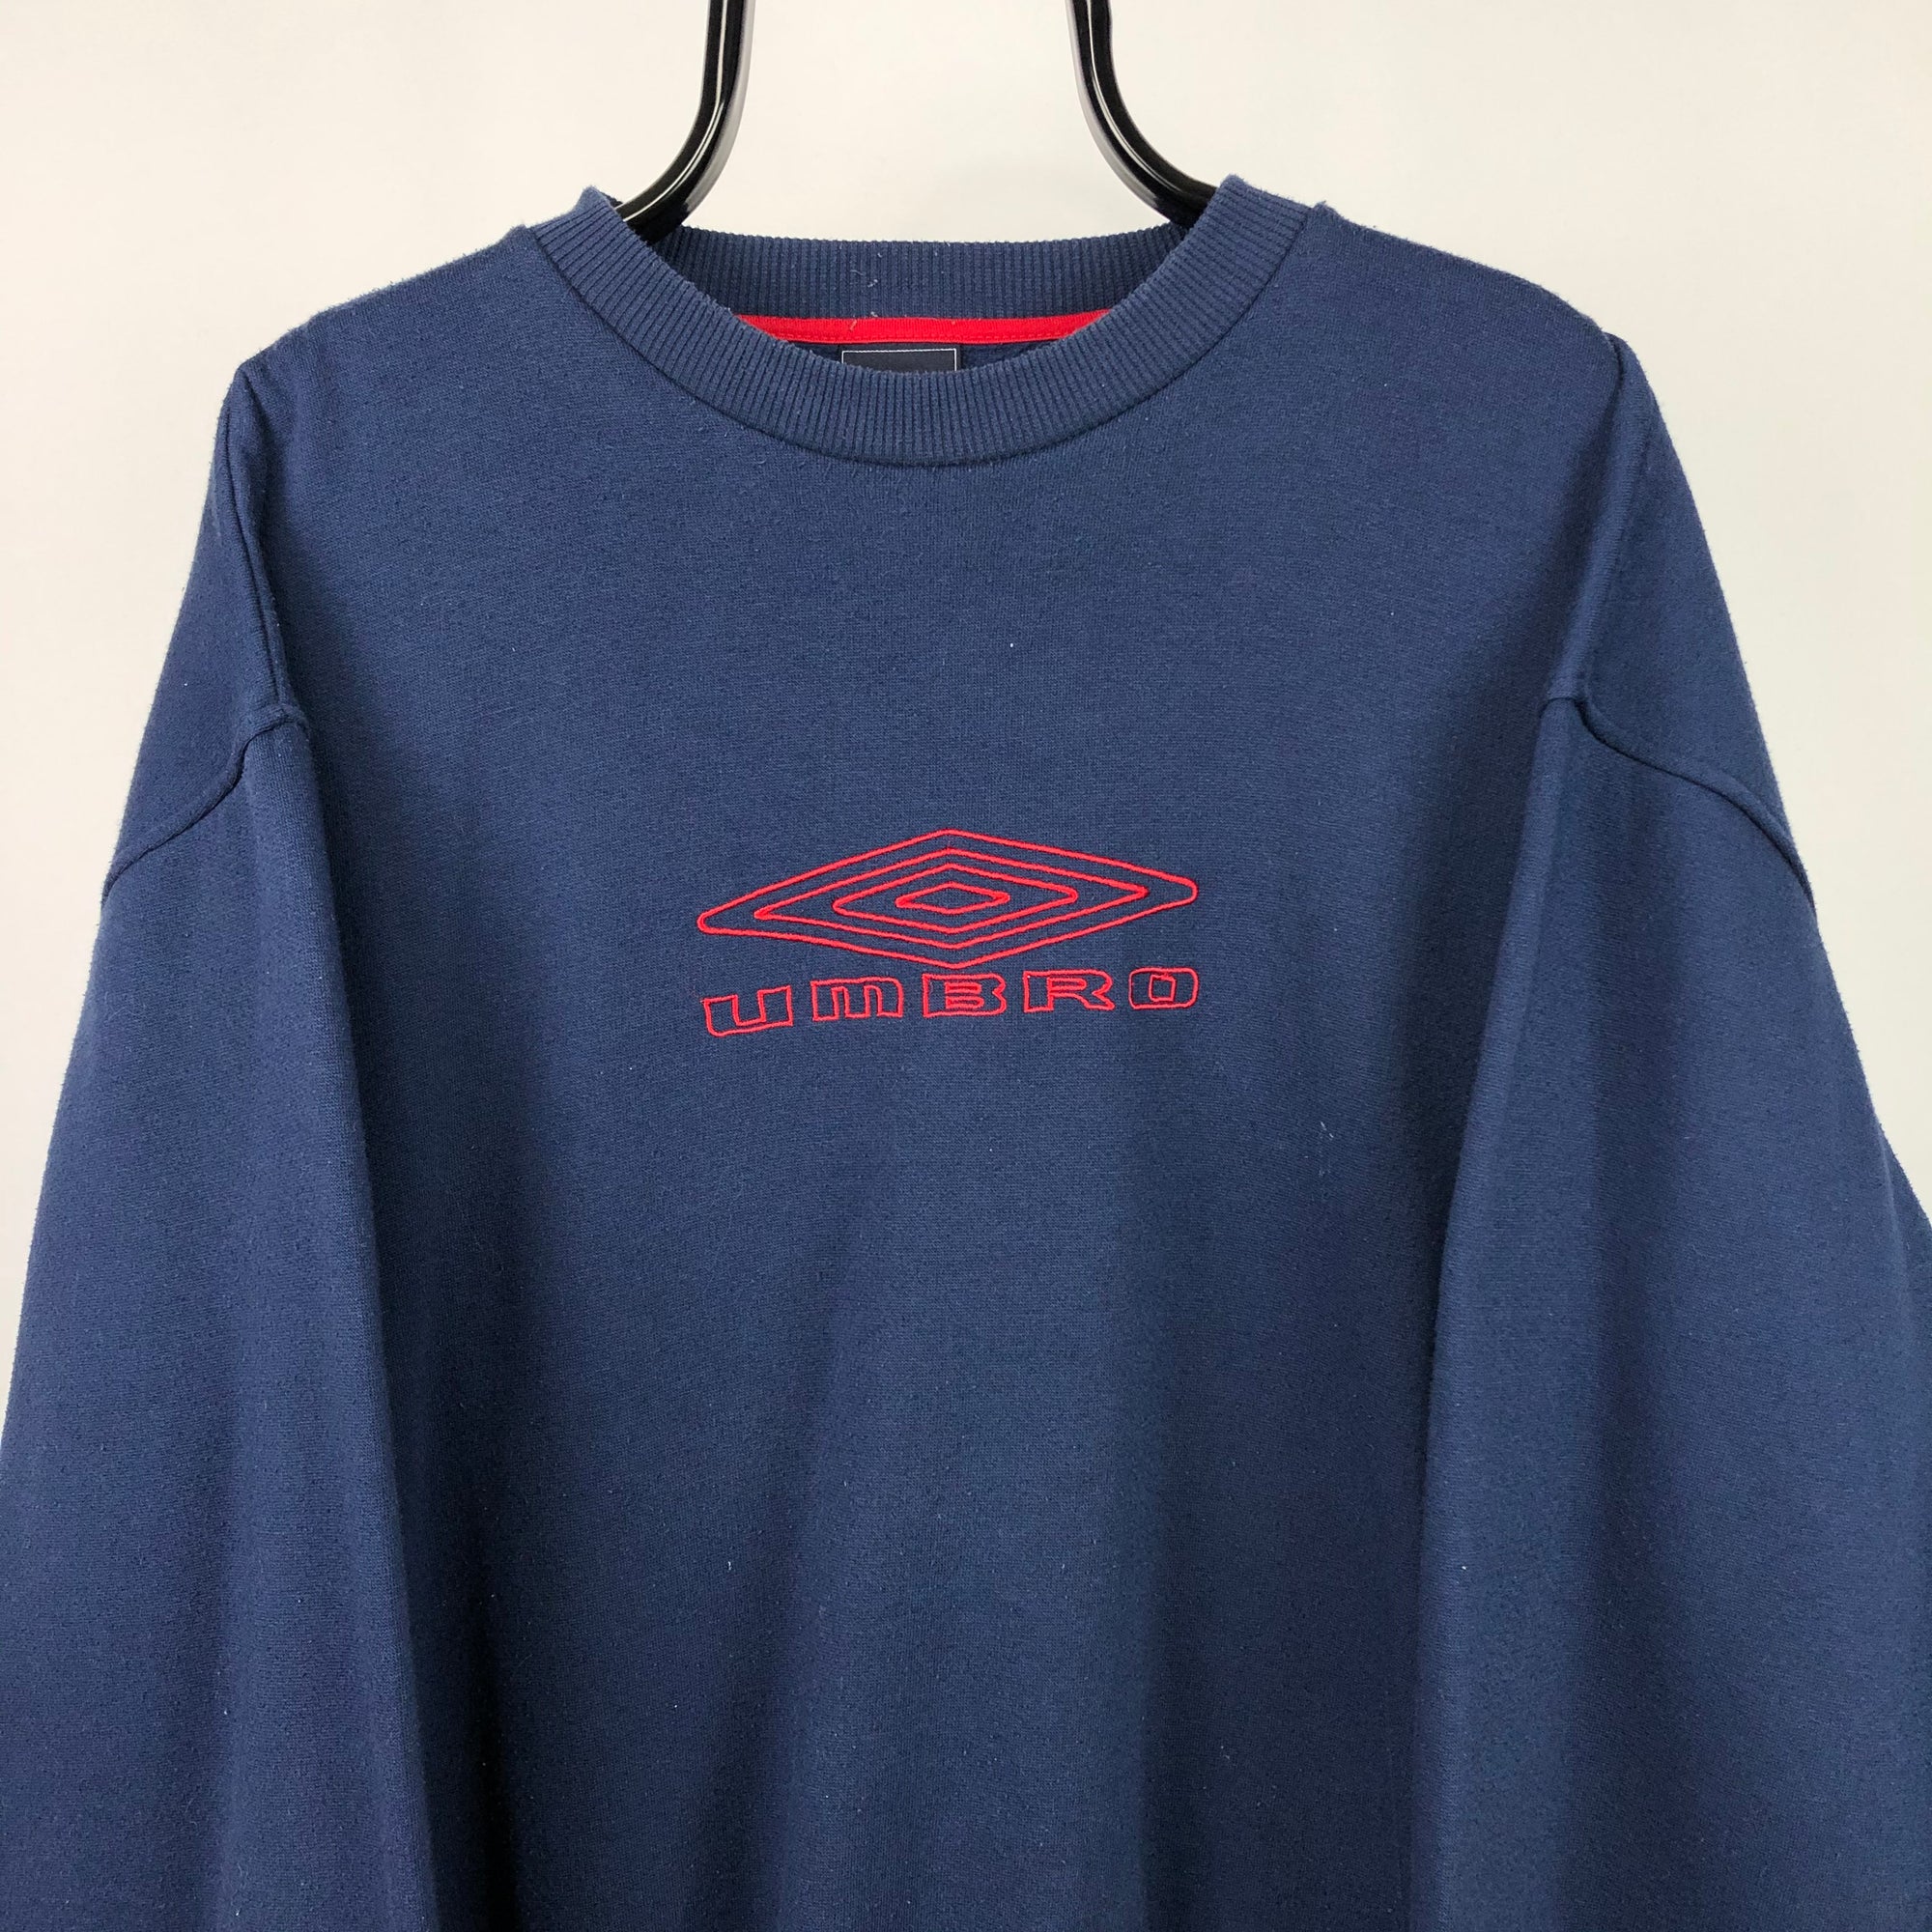 Vintage Umbro Spellout Sweatshirt in Navy - Men's XL/Women's XXL